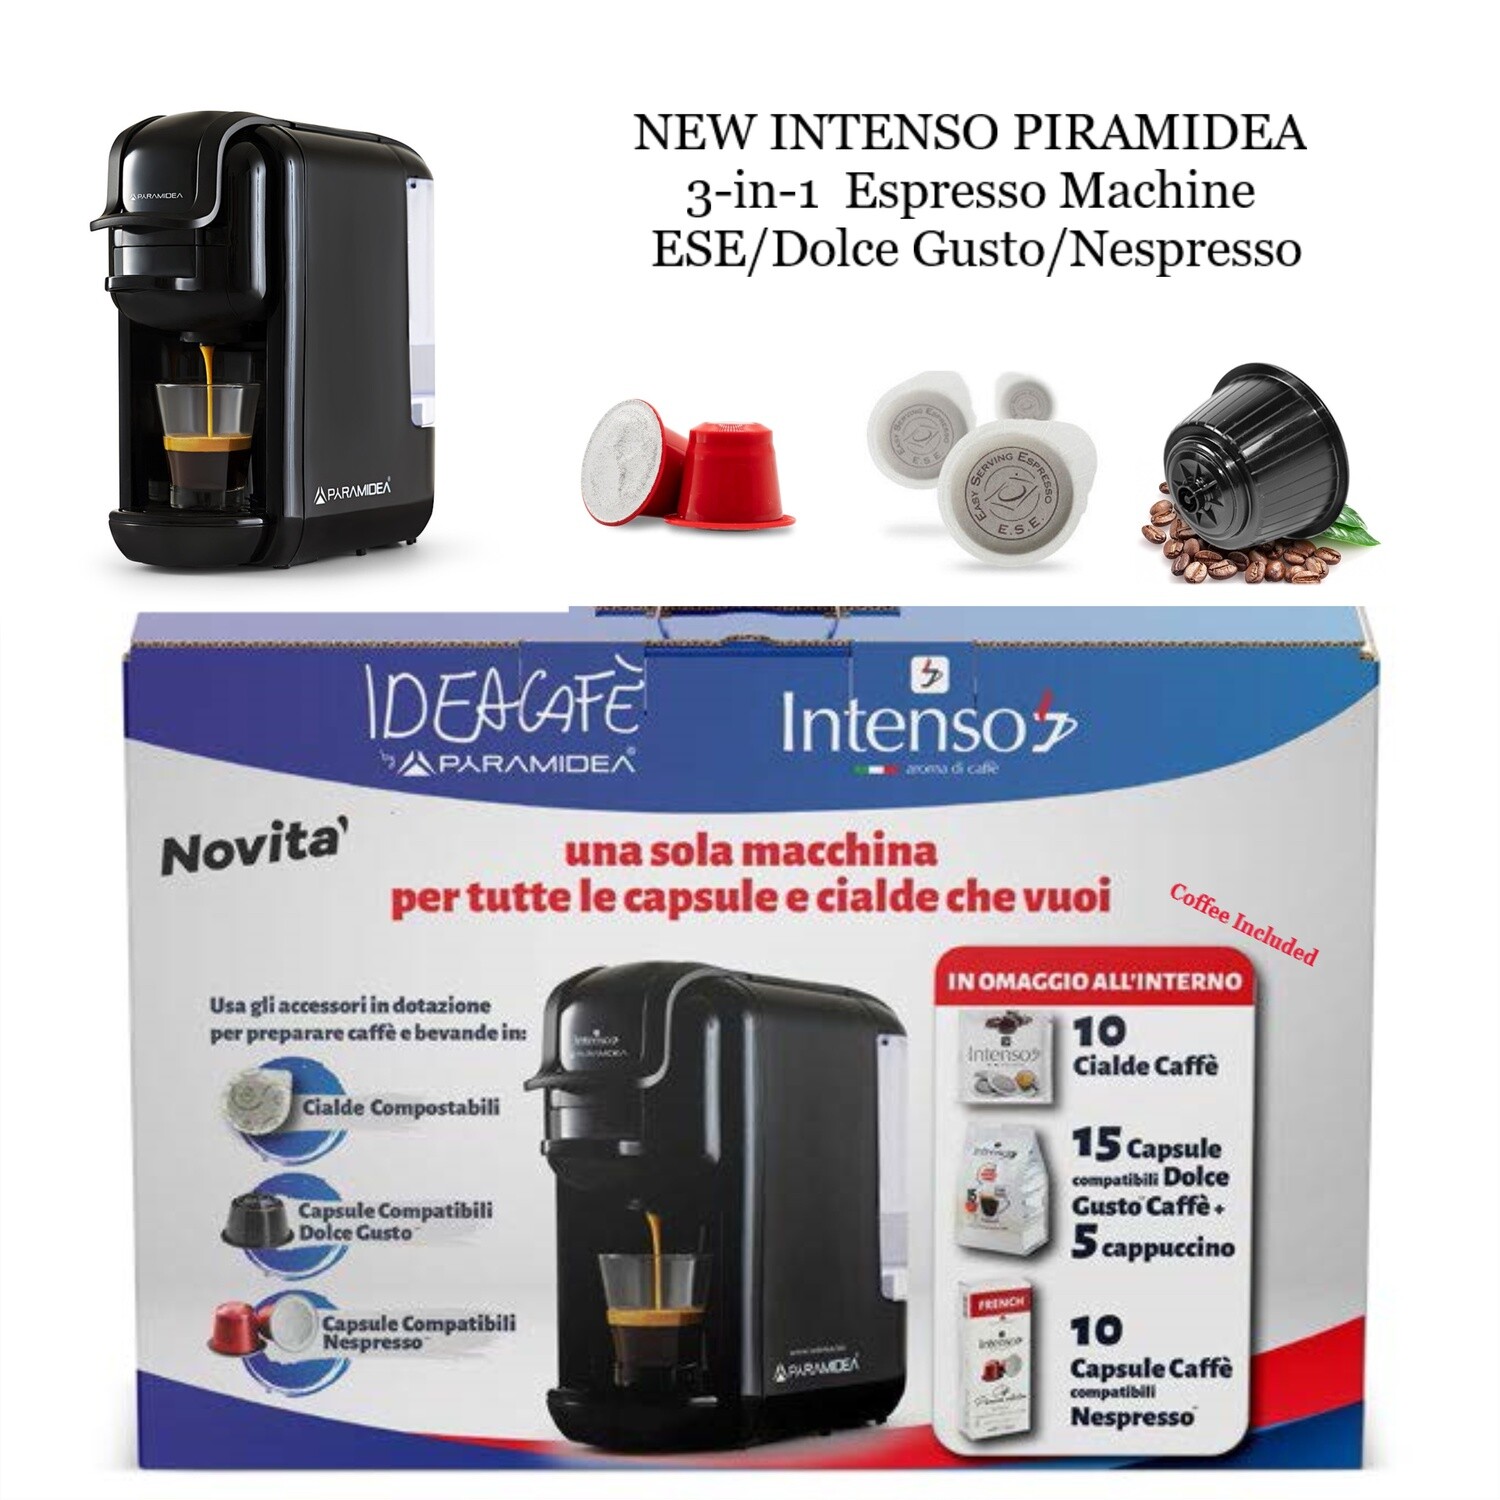 INTENSO PYRAMIDEA 3-IN-1 Espresso Machine ESE/Dolce Gusto/Nespresso